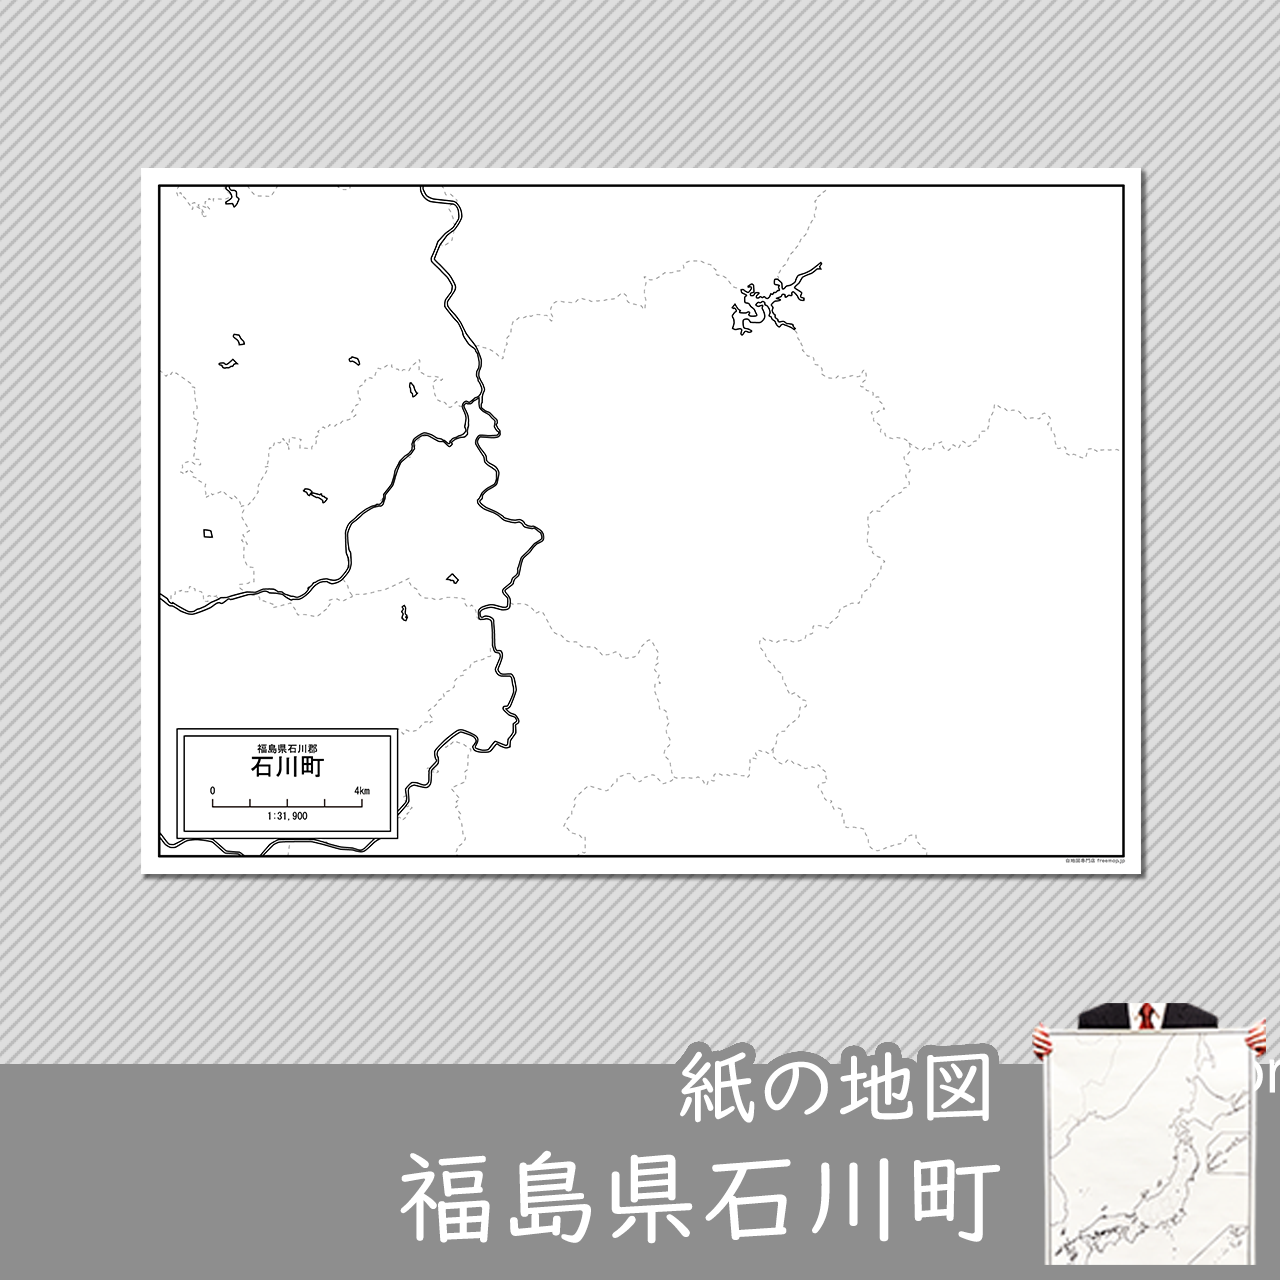 石川町の紙の白地図のサムネイル